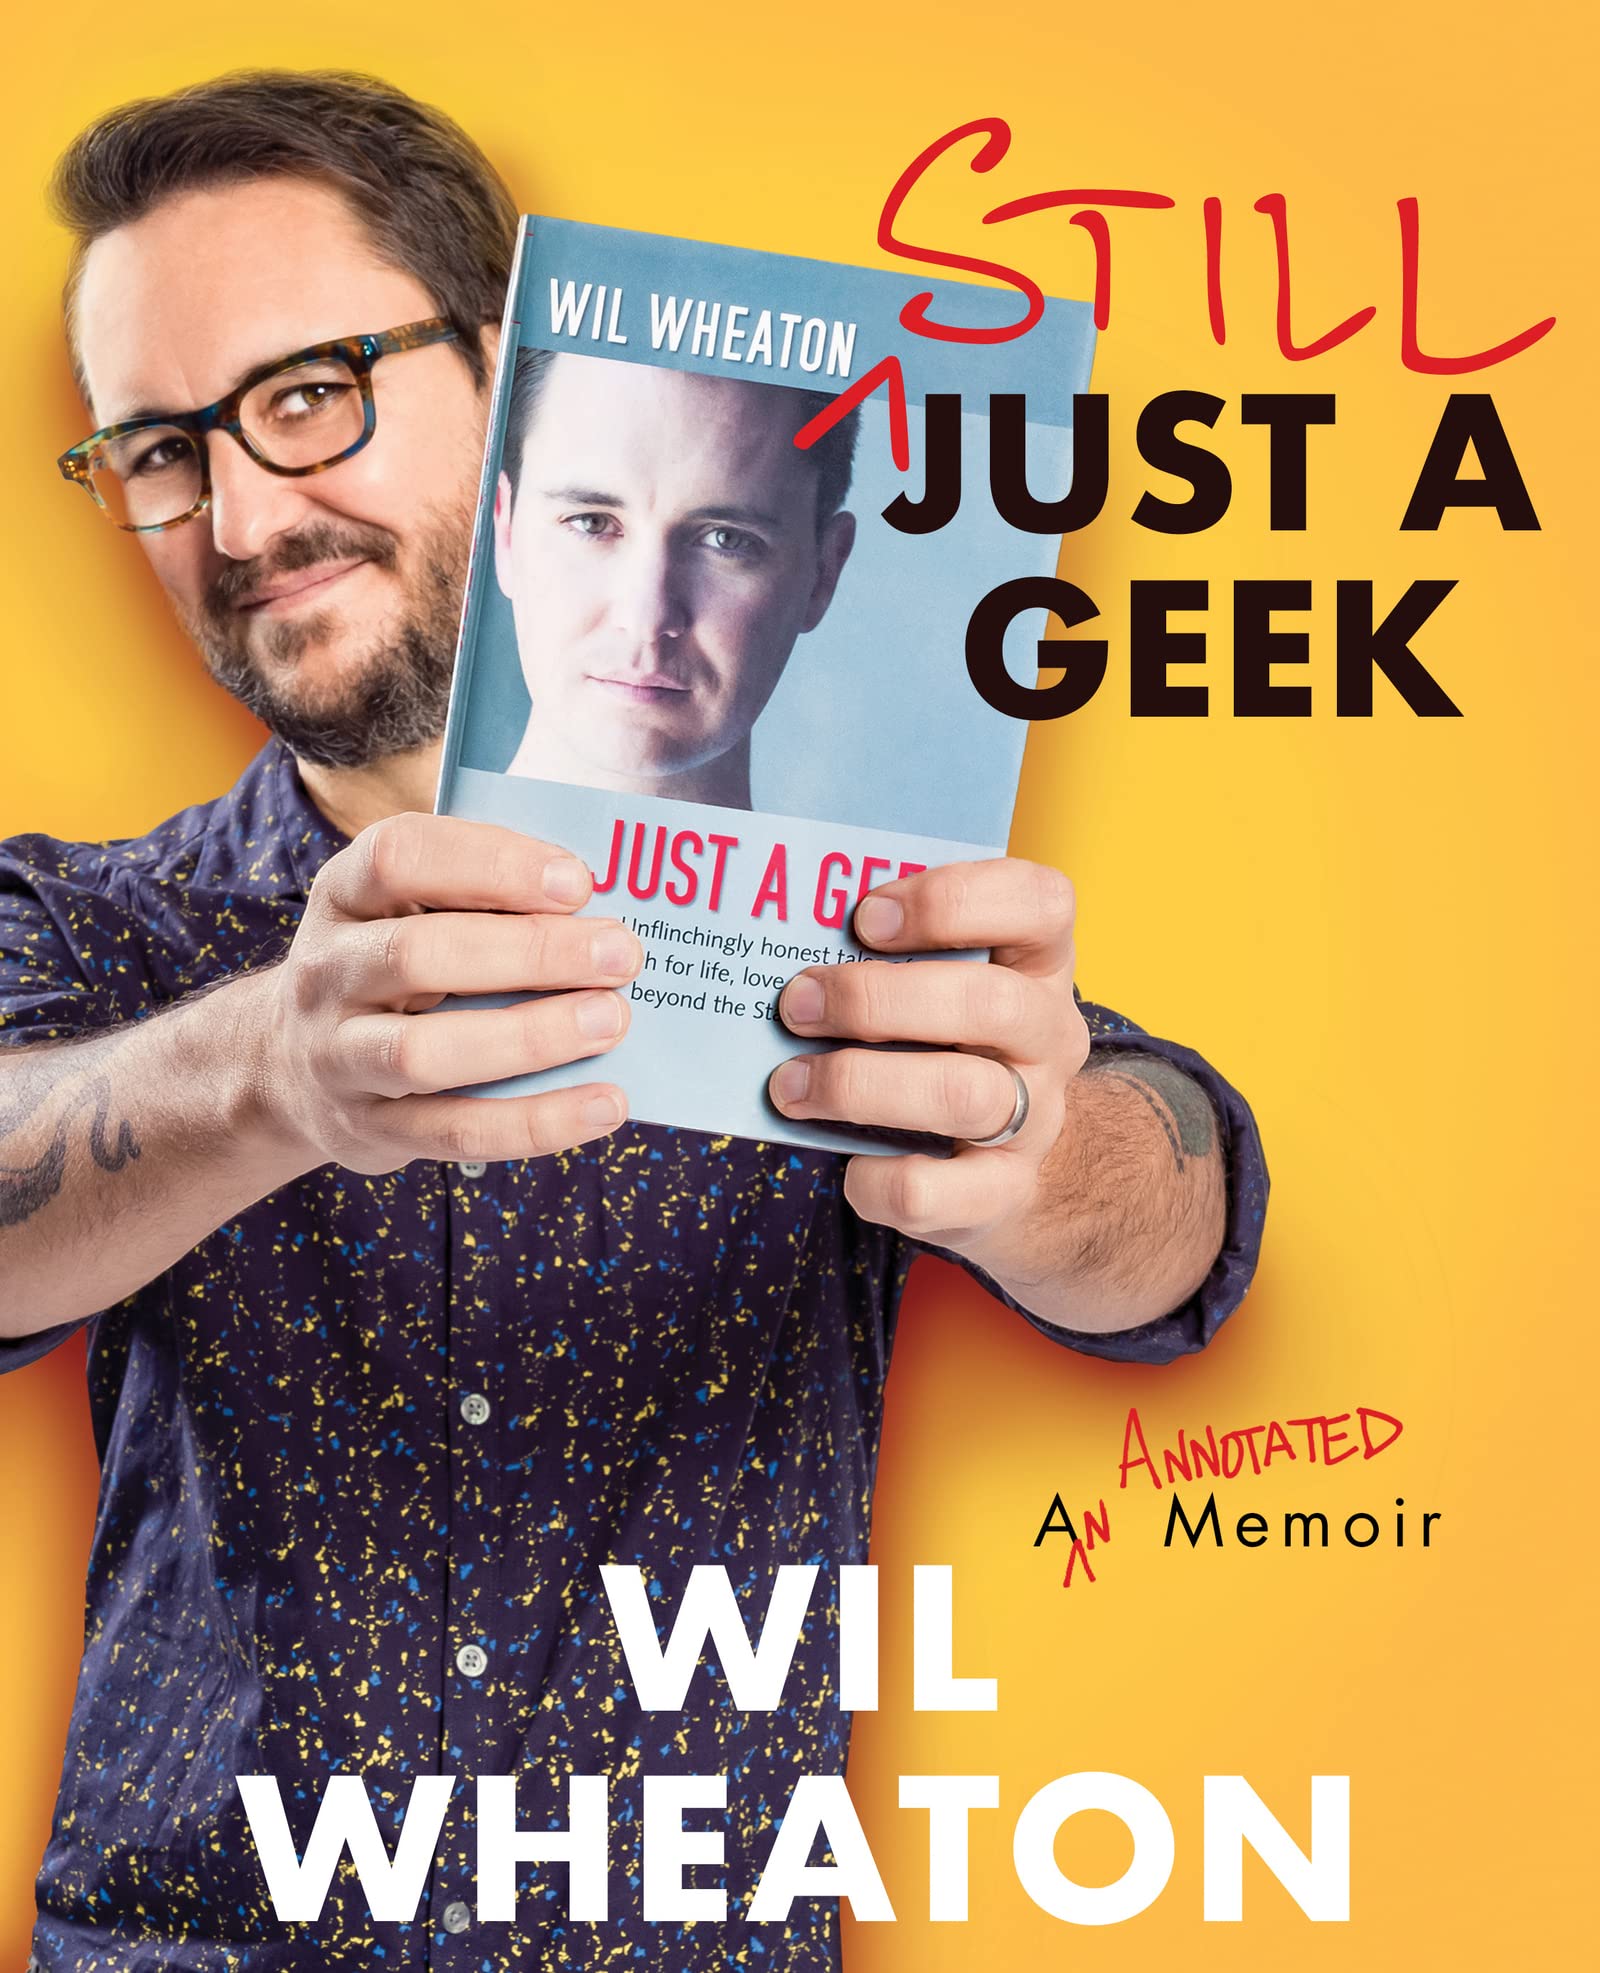 Still Just a Geek: An Annotated Memoir (eBook) by Wil Wheaton $1.99